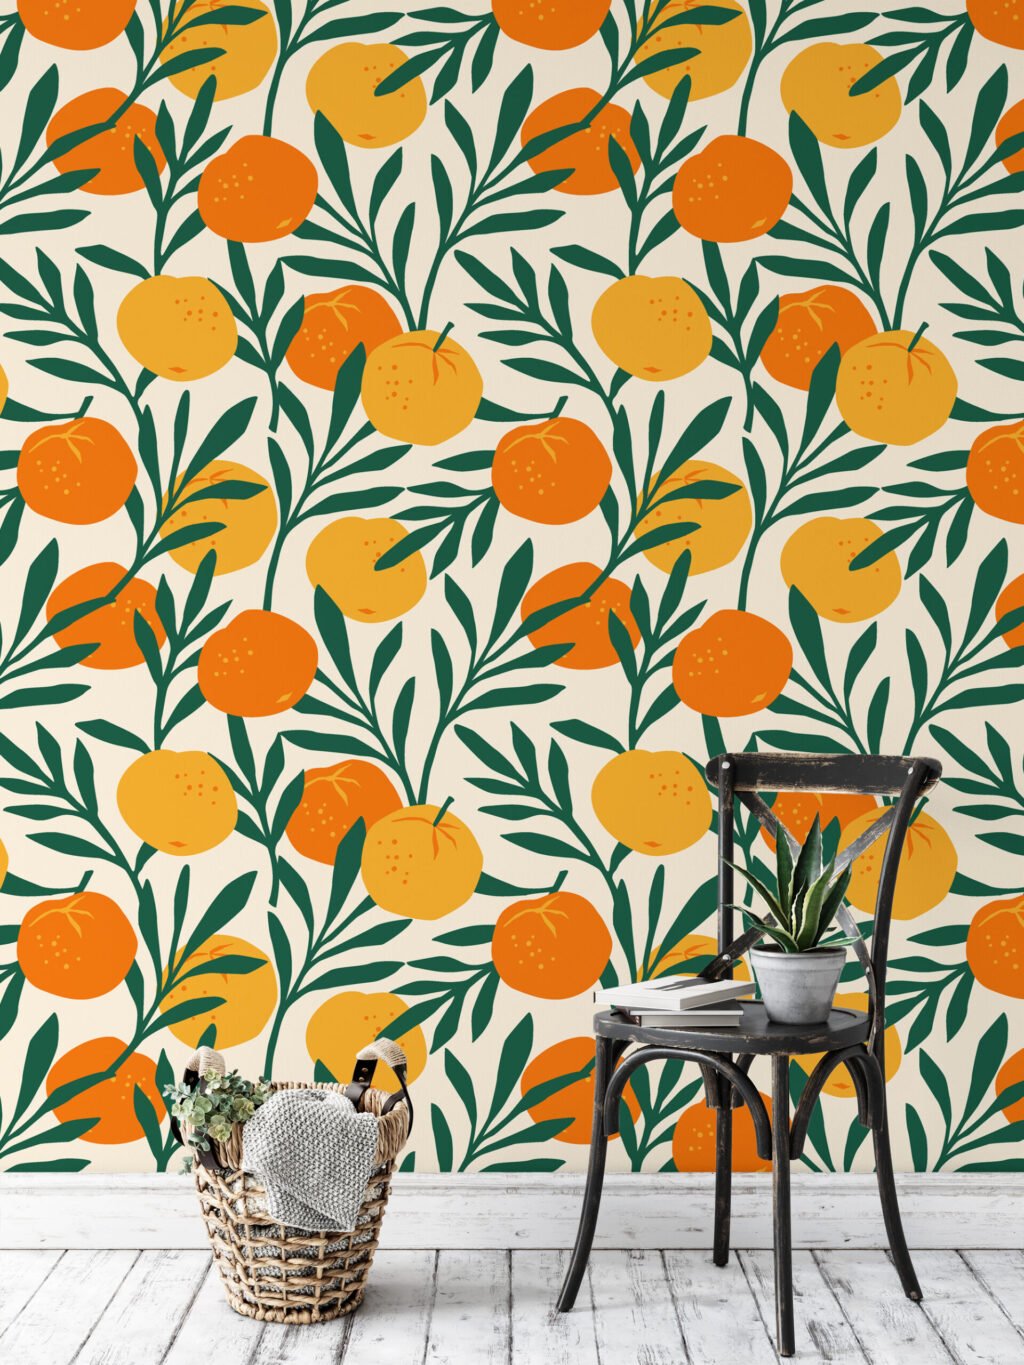 Portakal Desenli Duvar Kağıdı, Canlı Yeşil Yapraklarla Narenciye Duvar Posteri Çiçekli Duvar Kağıtları 5